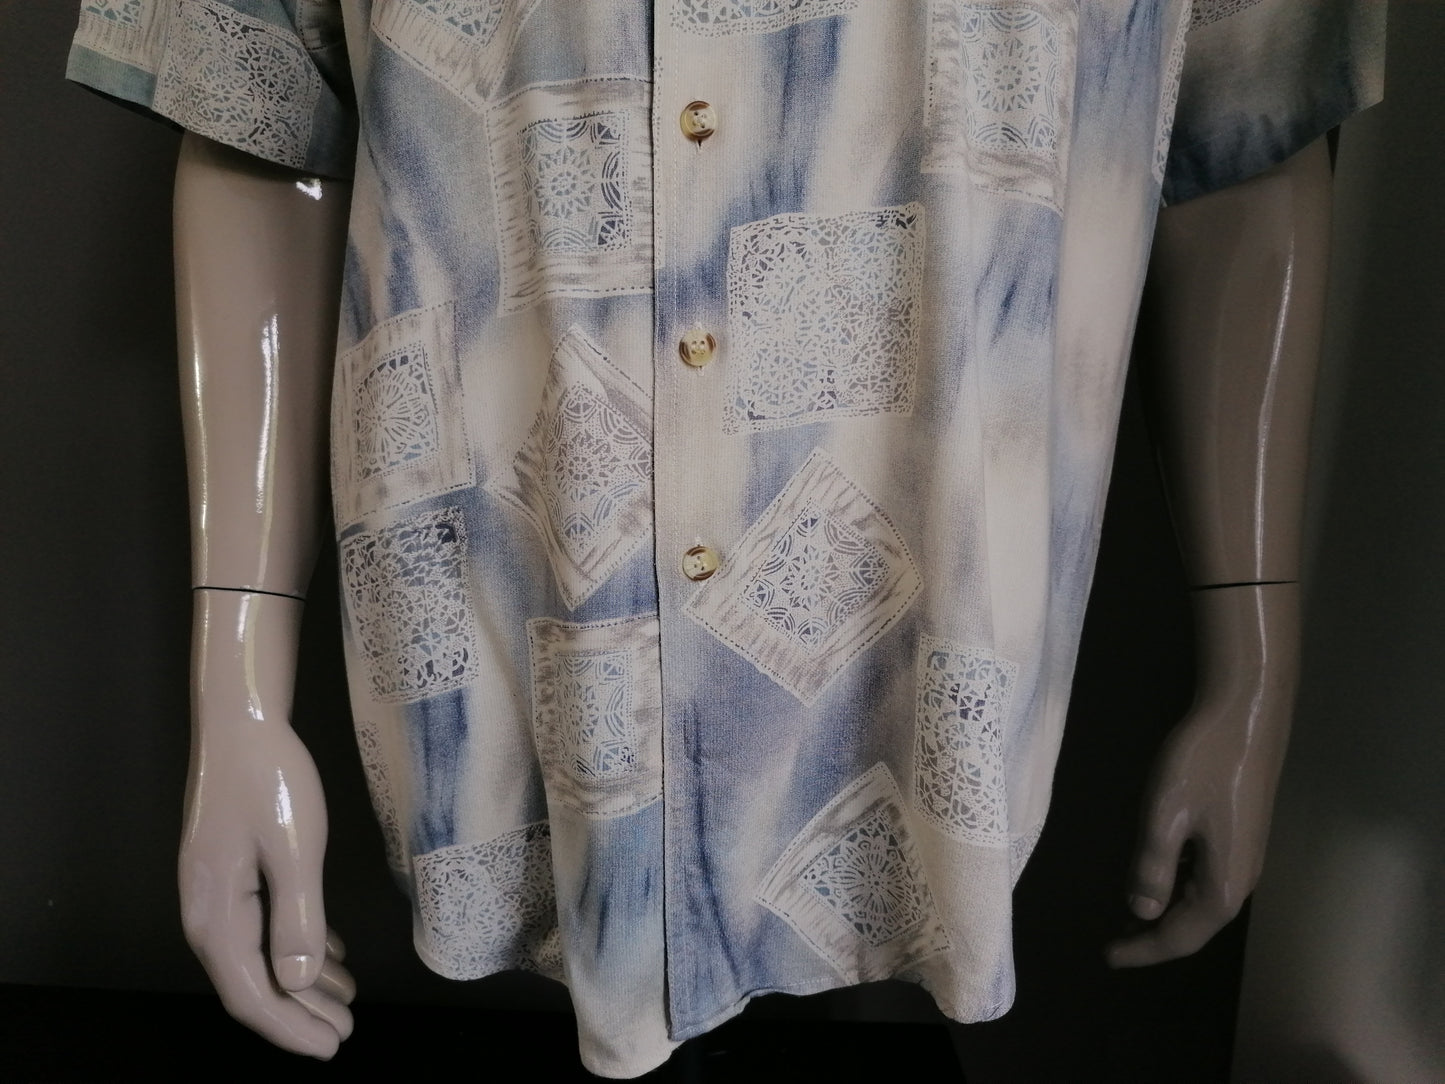 Camisa de manga corta de la vendimia 90. Azul beige Tamaño XL. Viscosa.